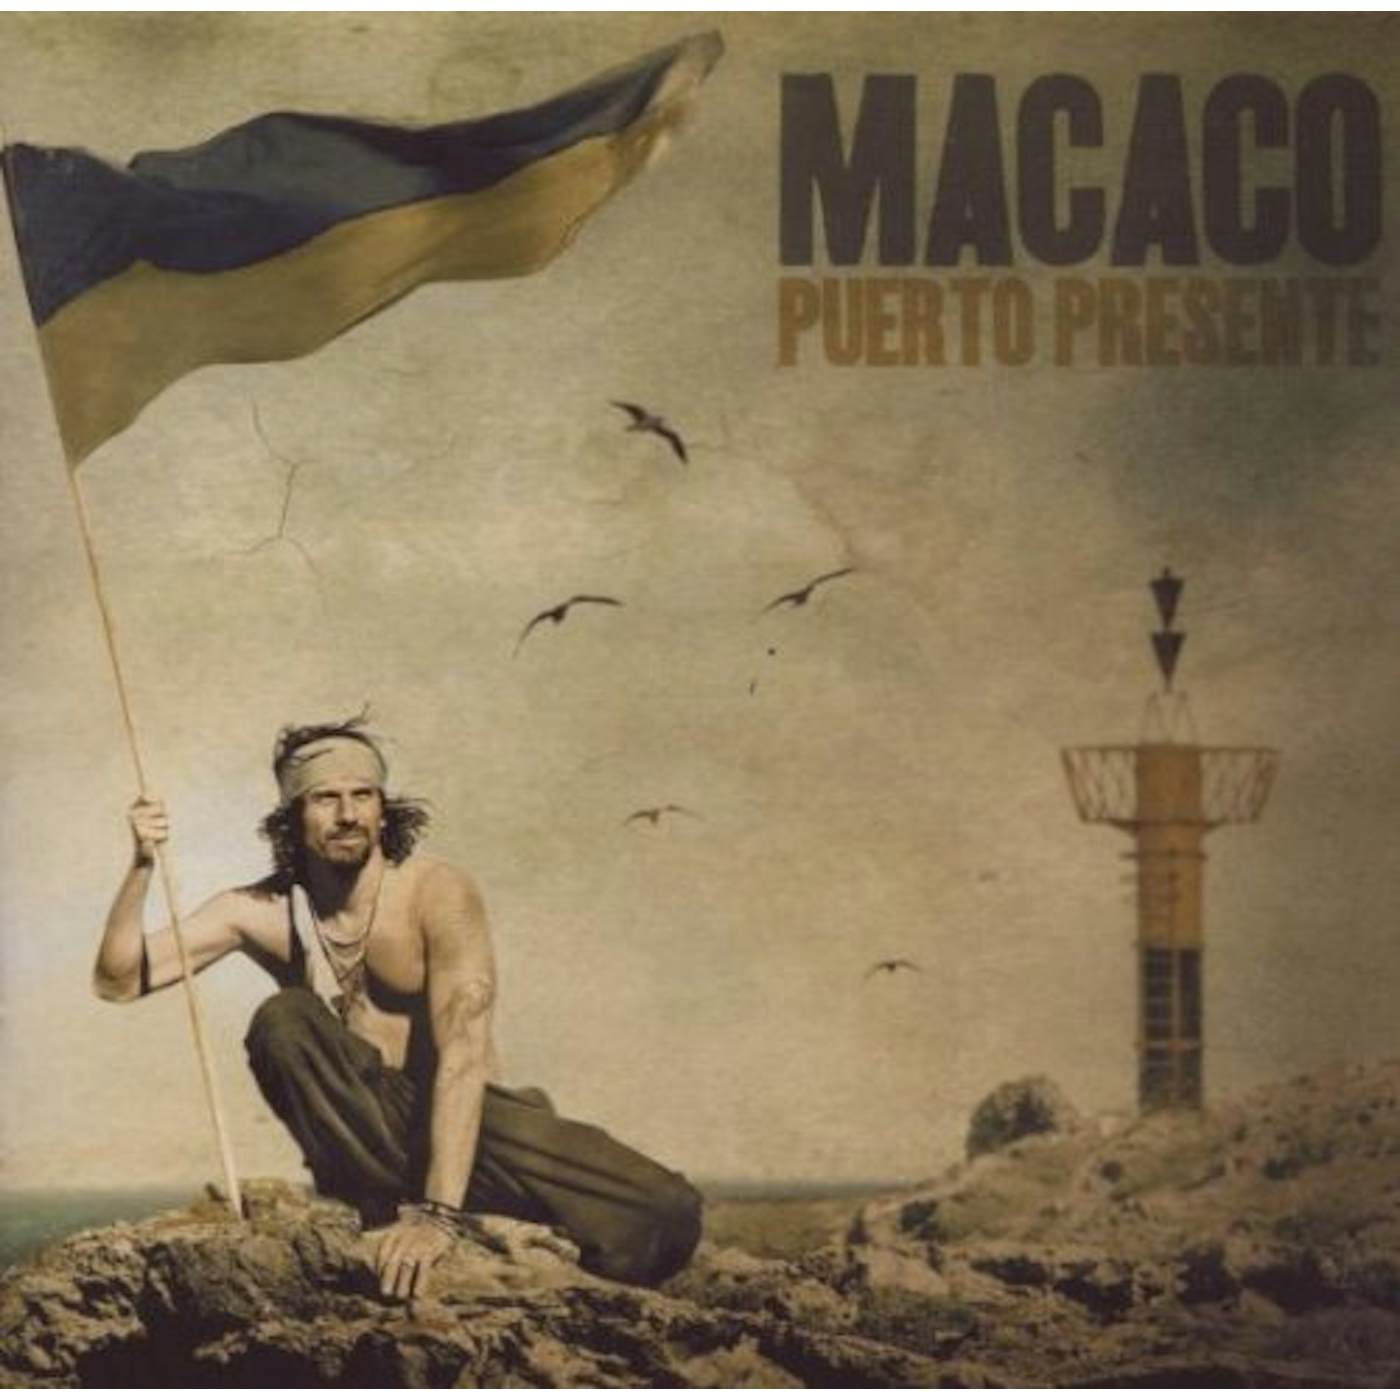 Macaco PUERTO PRESENTE CD